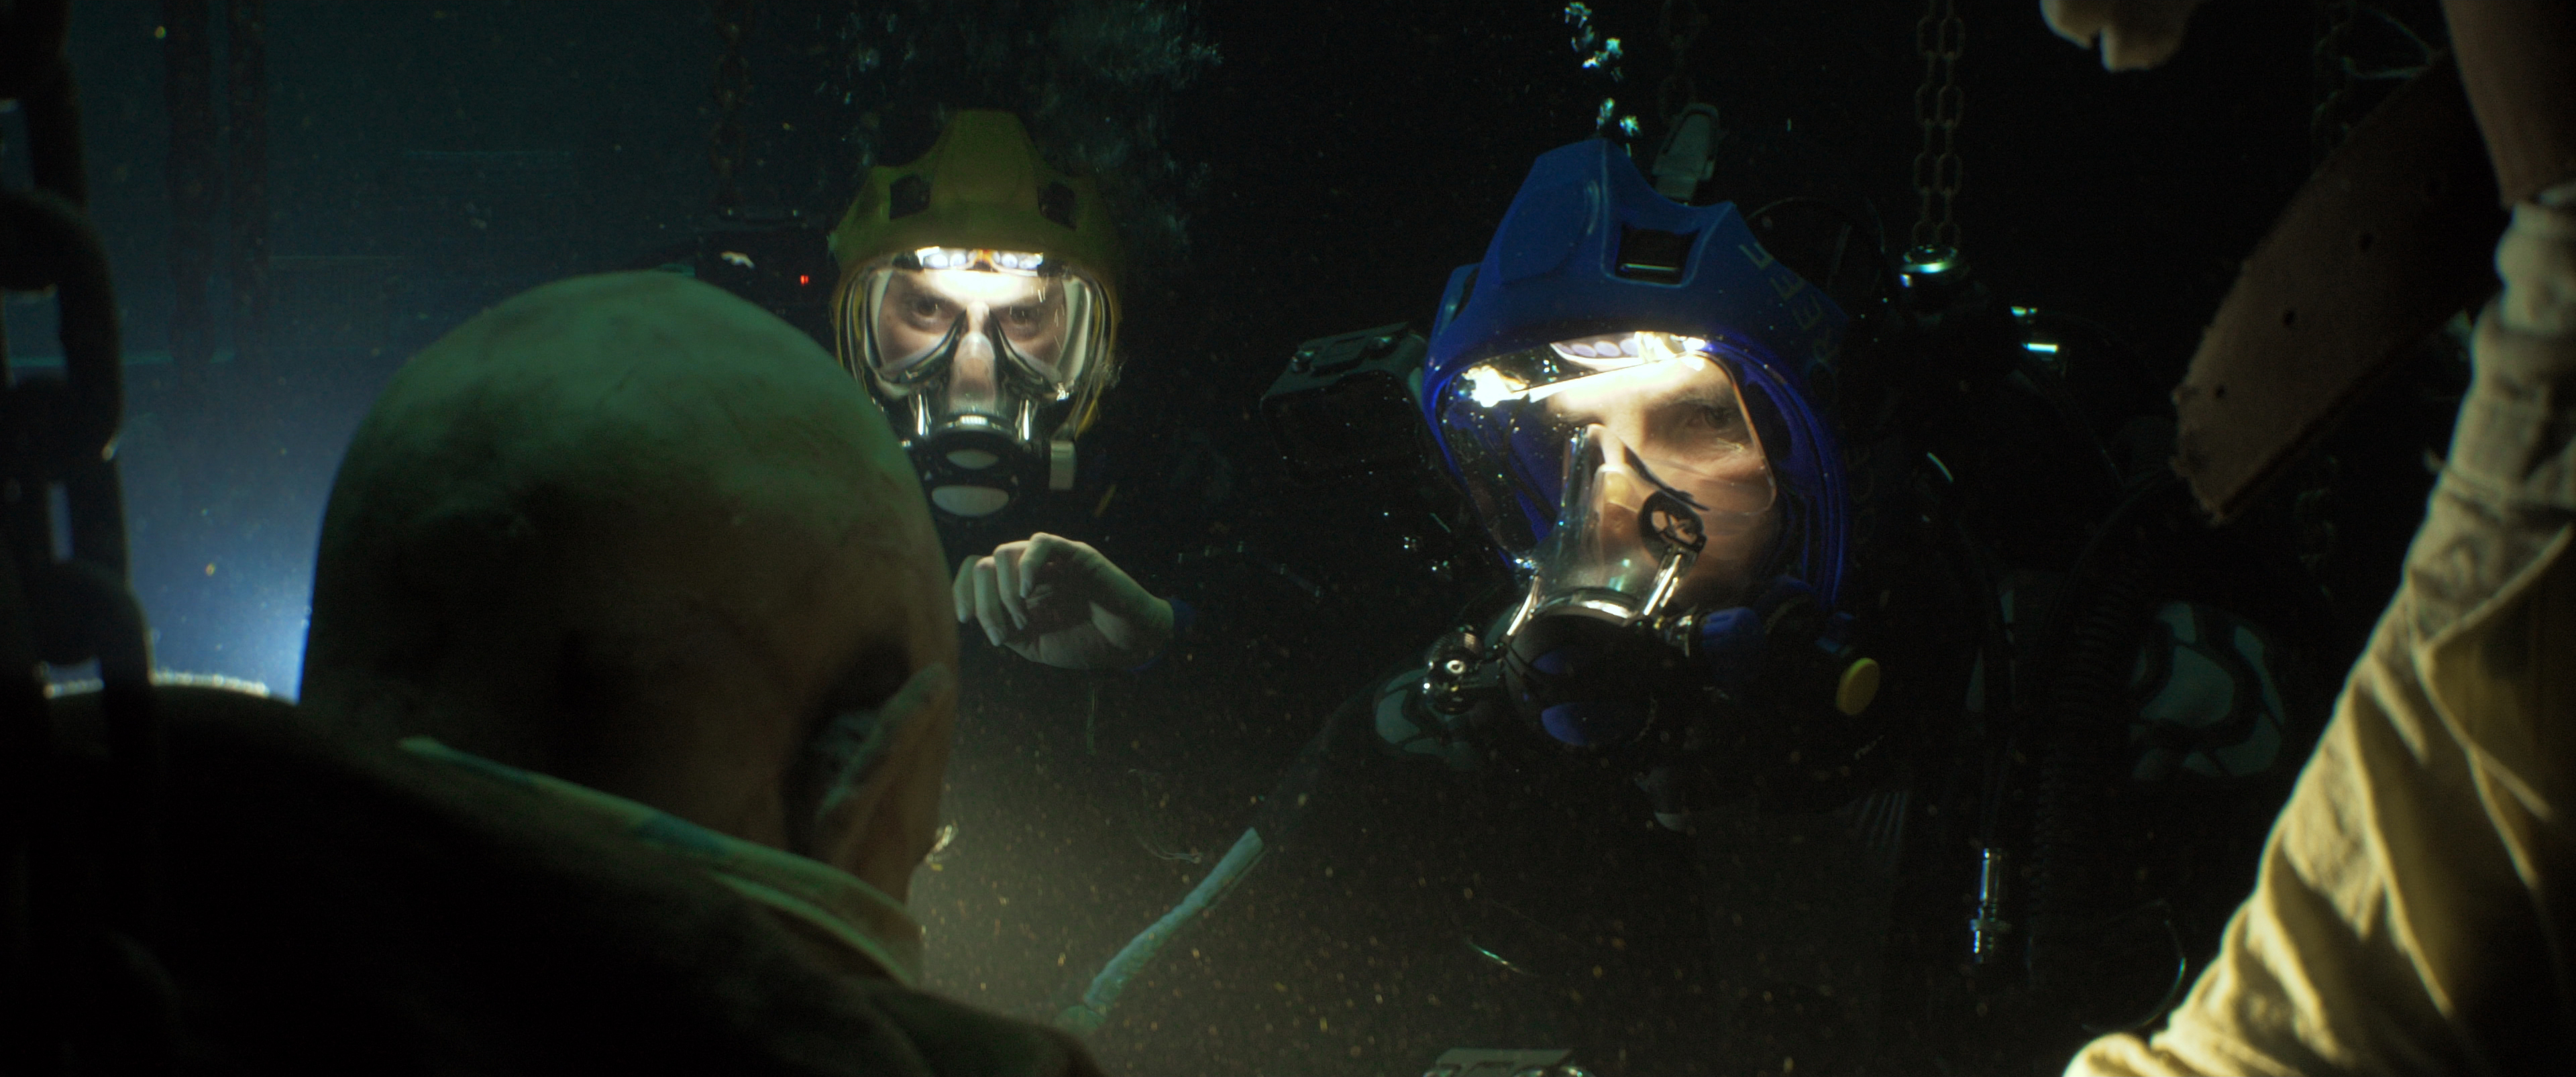 The Deep House : le film a-t-il vraiment été tourné sous l'eau ? - CinéSérie